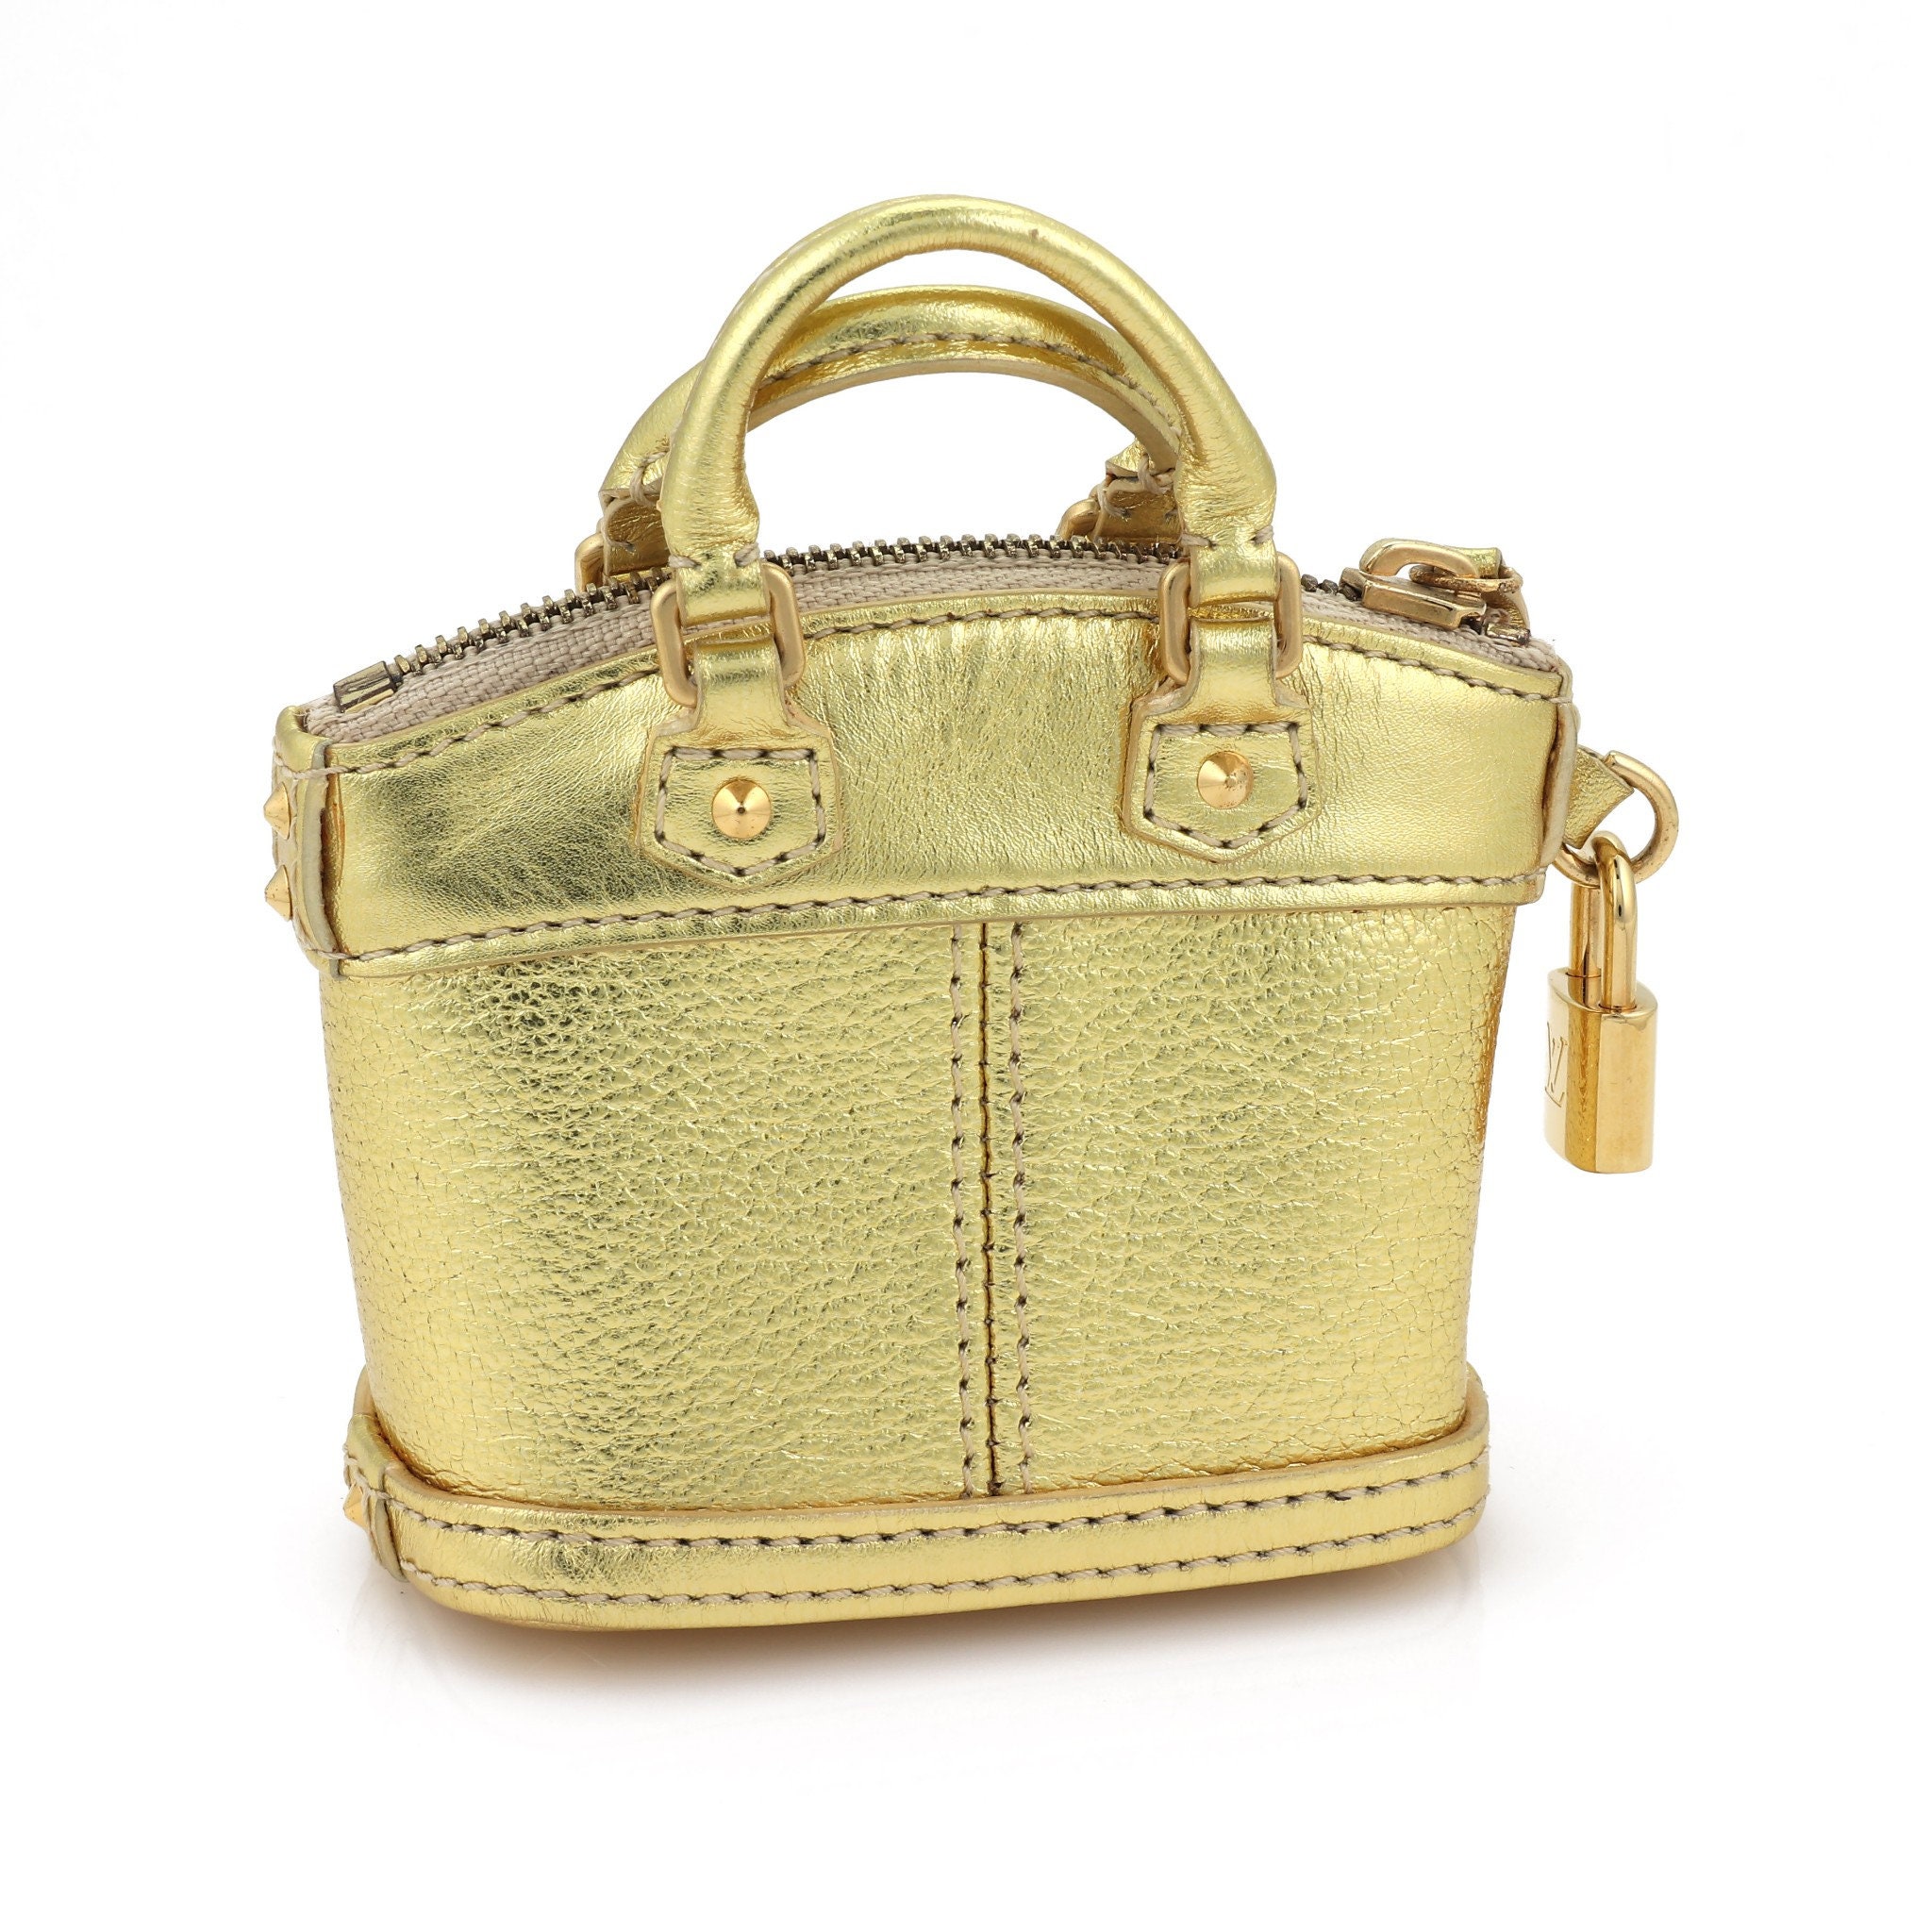 Louis Vuitton Lockit - Authentic Louis Vuitton Handbags